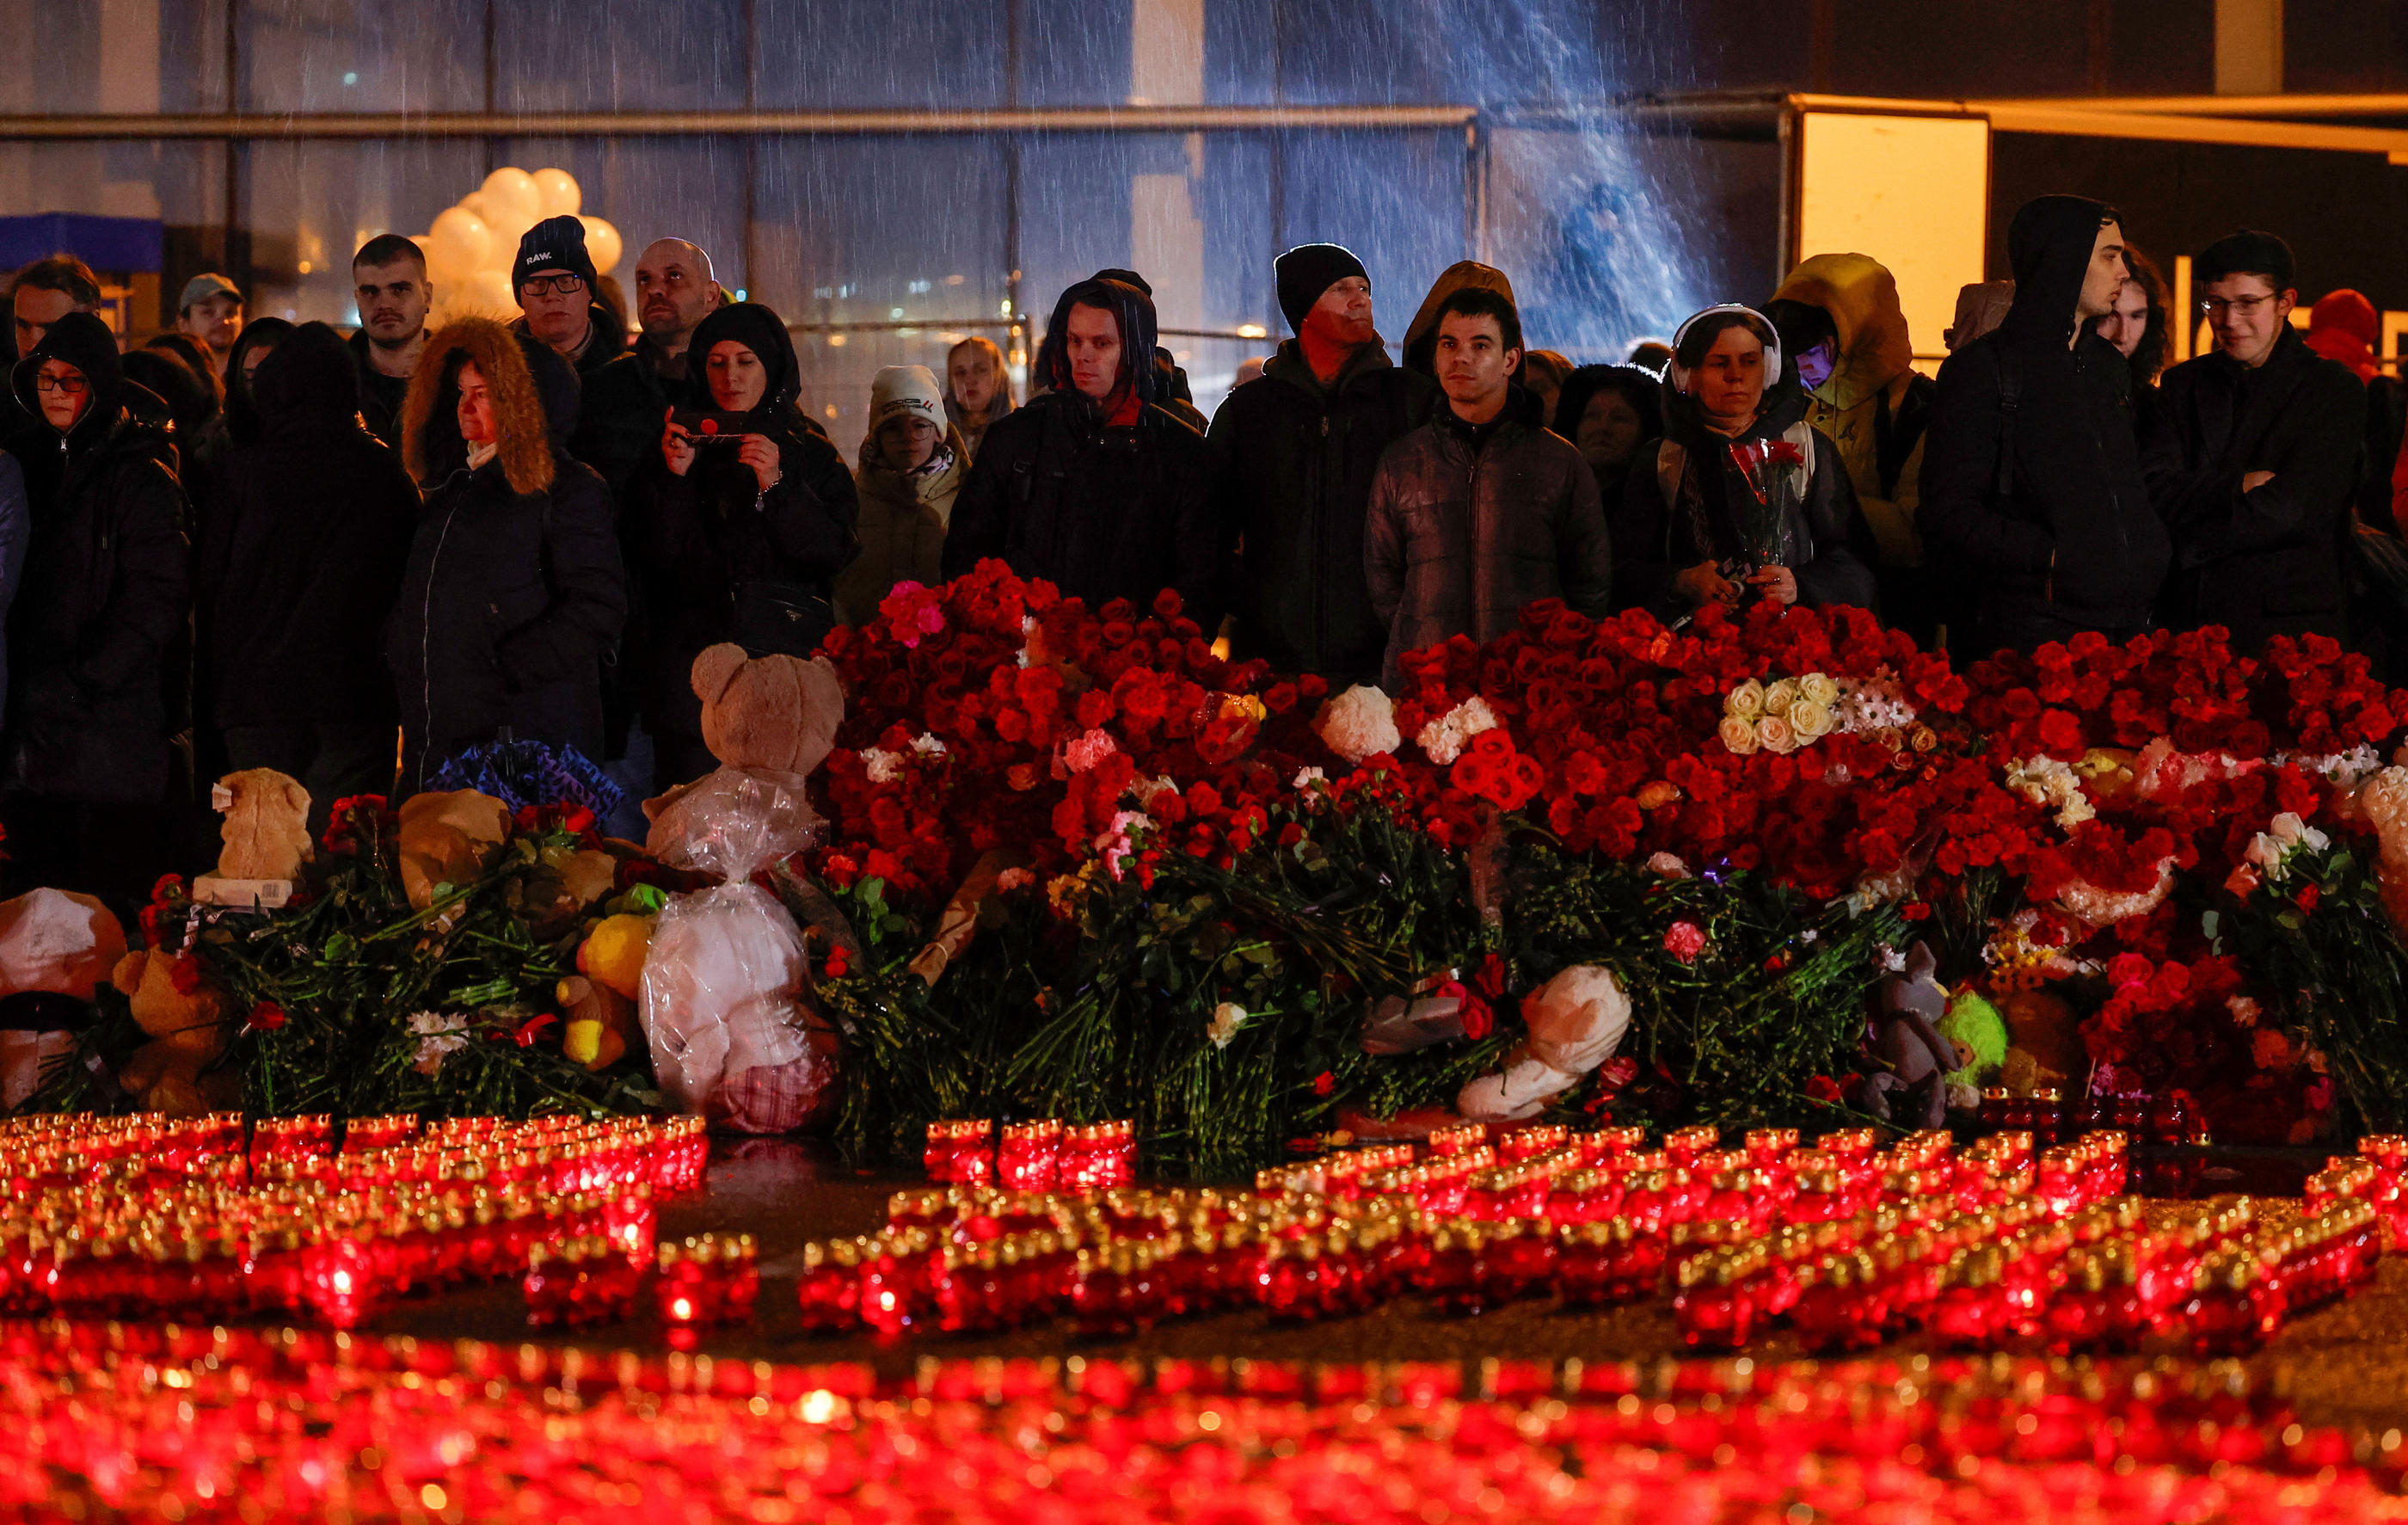 Au lendemain de la journée de deuil national, beaucoup de Russes viennent déposer des fleurs pour les victimes et leurs familles au Crocus City Hall, près de Moscou. Reuters/Maxim Shemetov